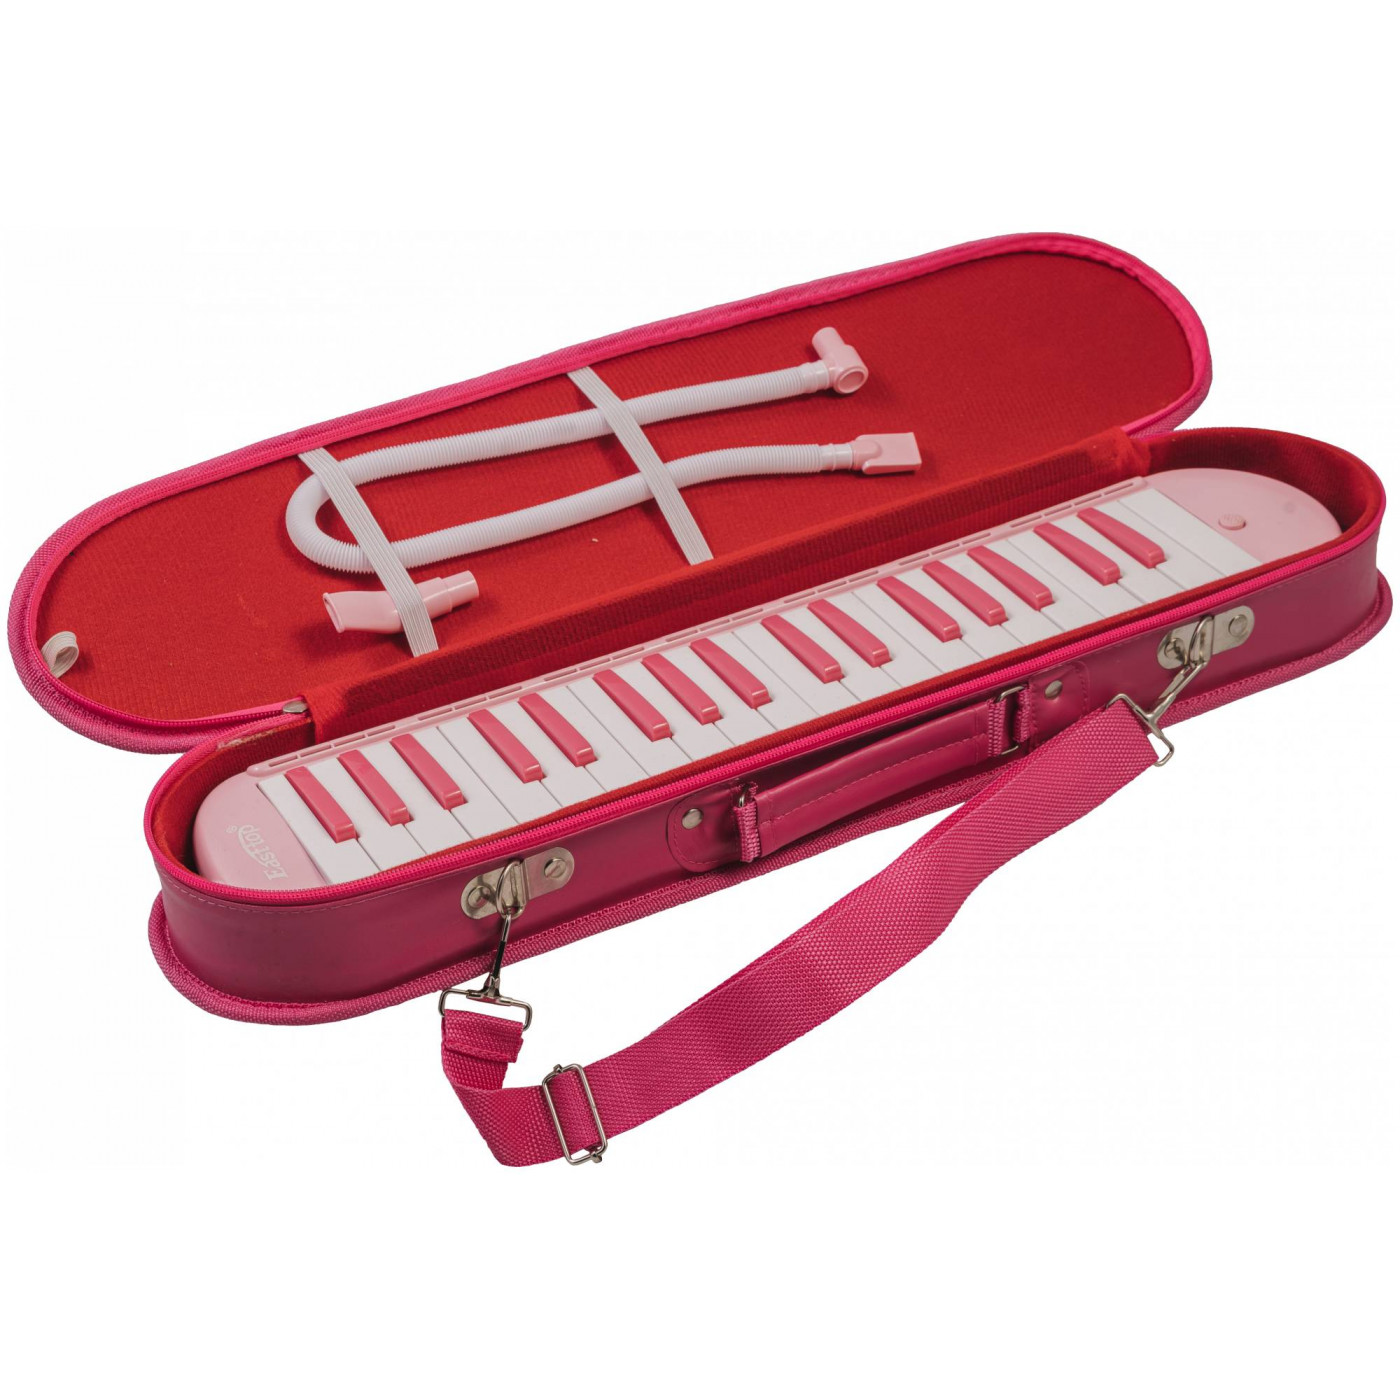 BEE BM-37SL PINK - Мелодика духовая клавишная 37 клавиш, розовый, мягкий чехол